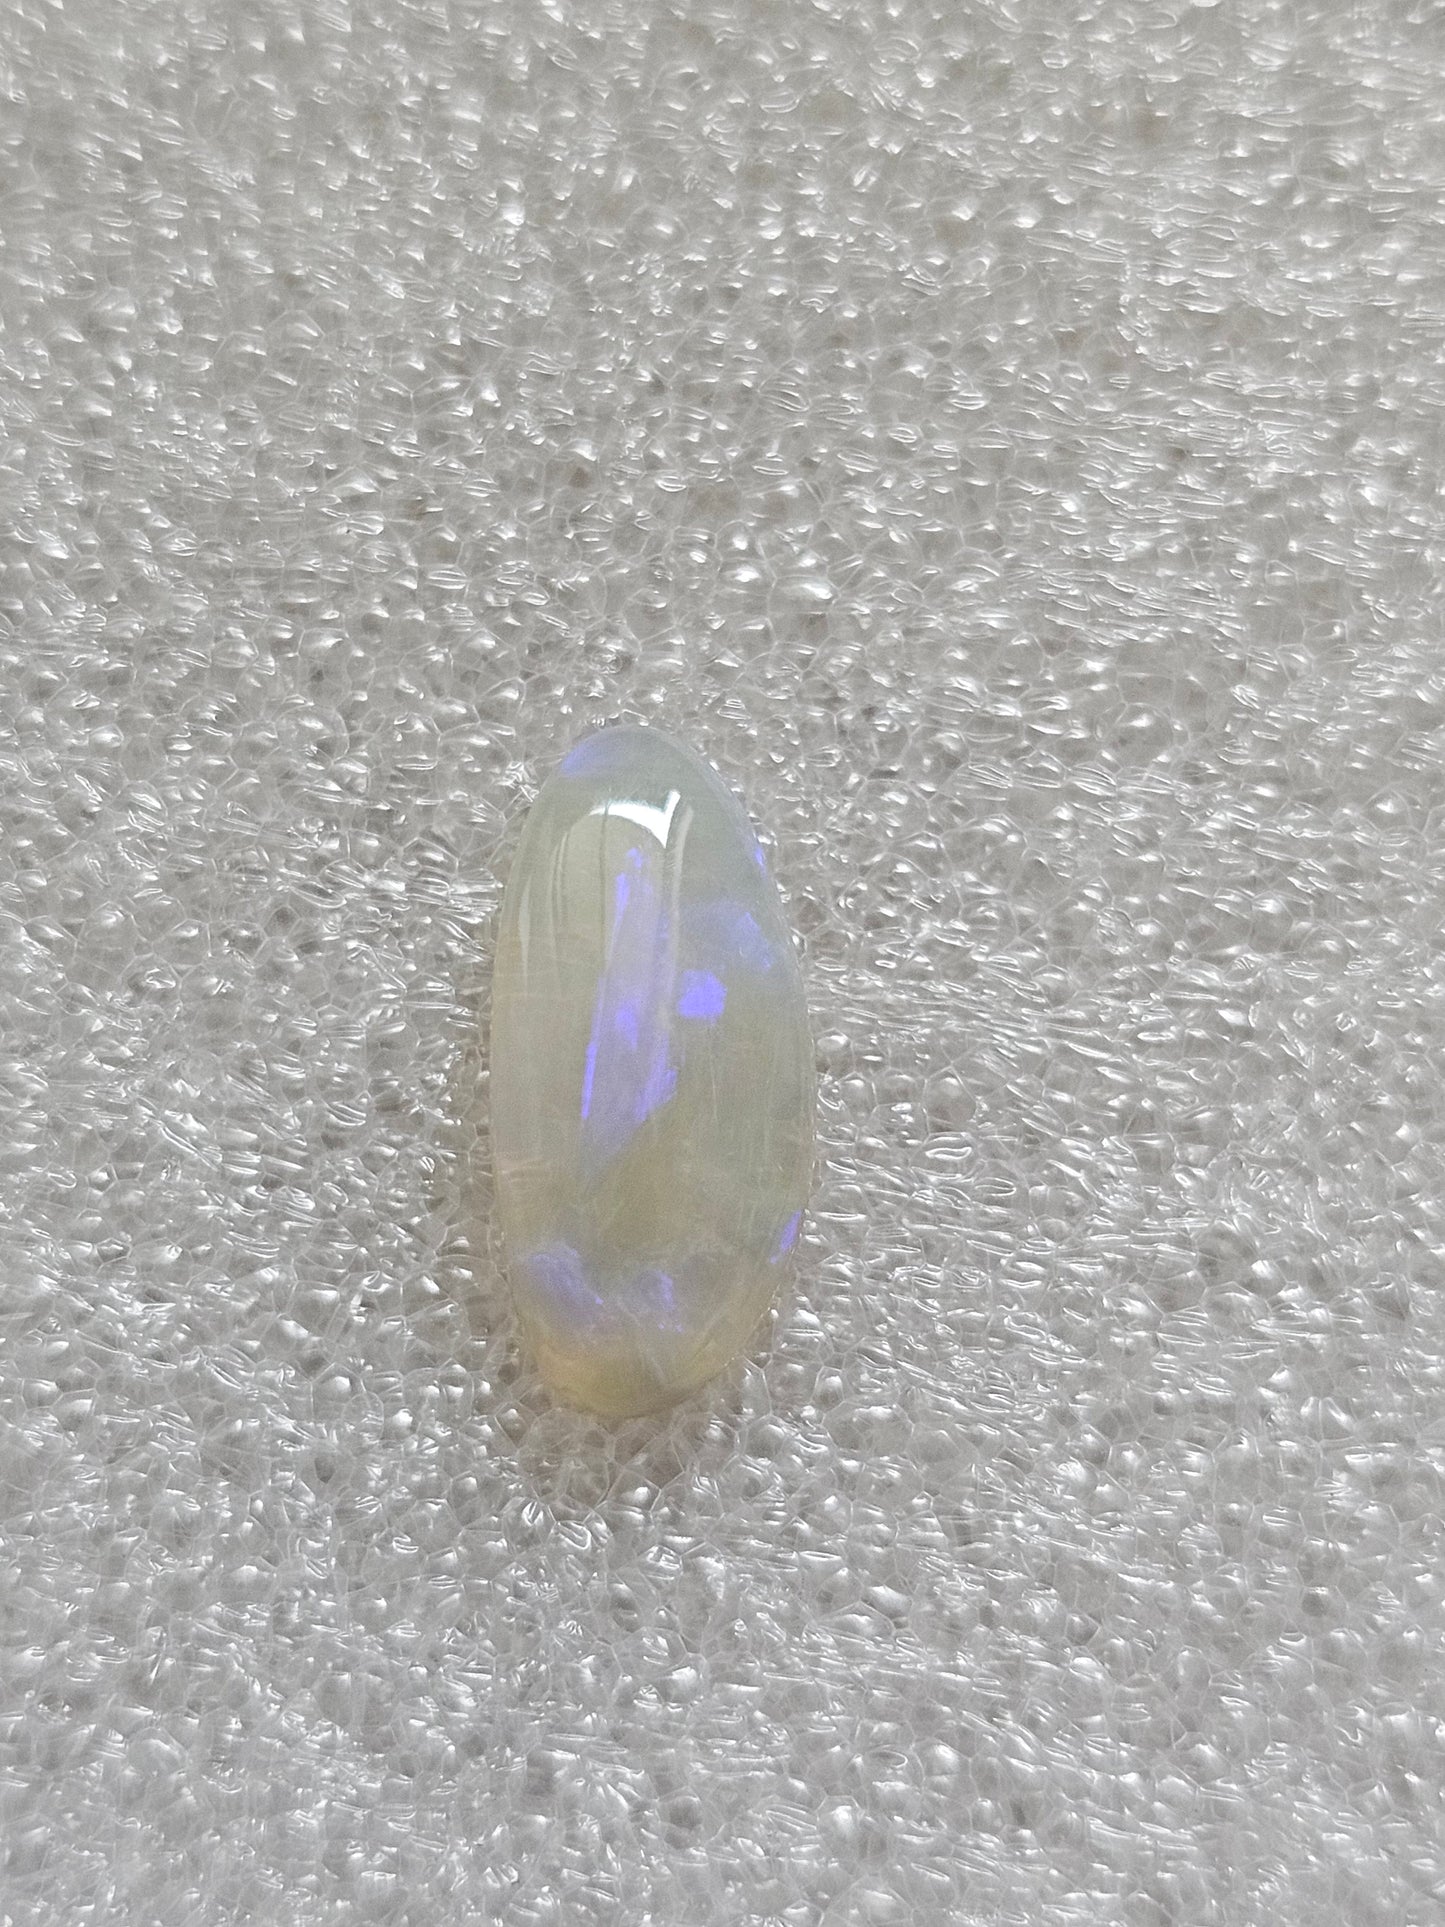 Lightning ridge Opal / Aussie opal / Crystal opal NSW